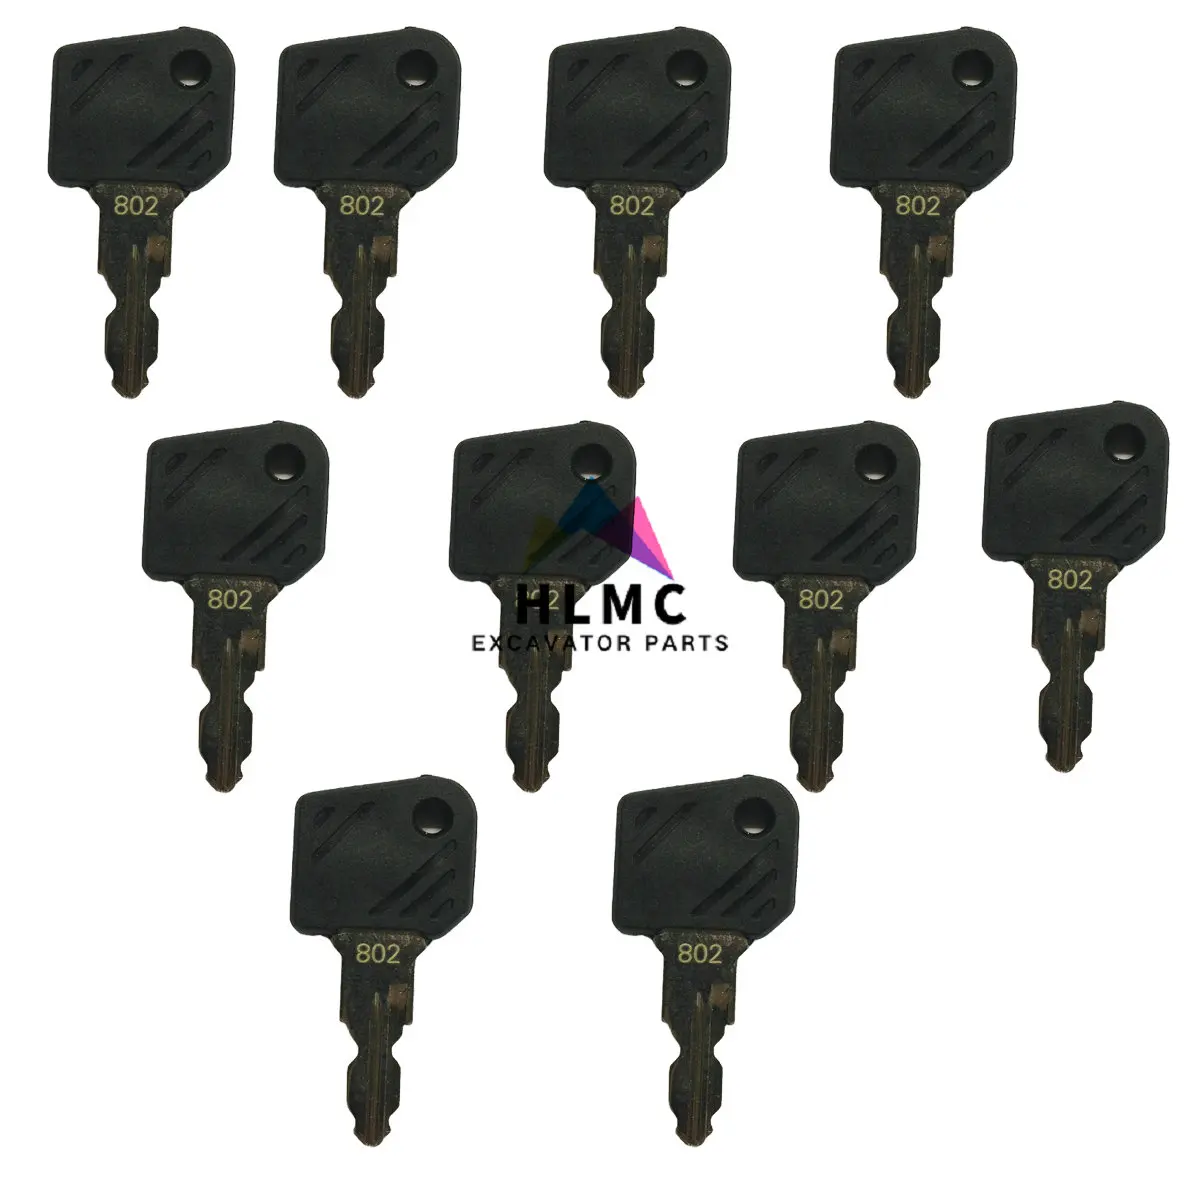 

10PCS 0039730404 0039730403 ignition key 802 start key for Linde forklift parts